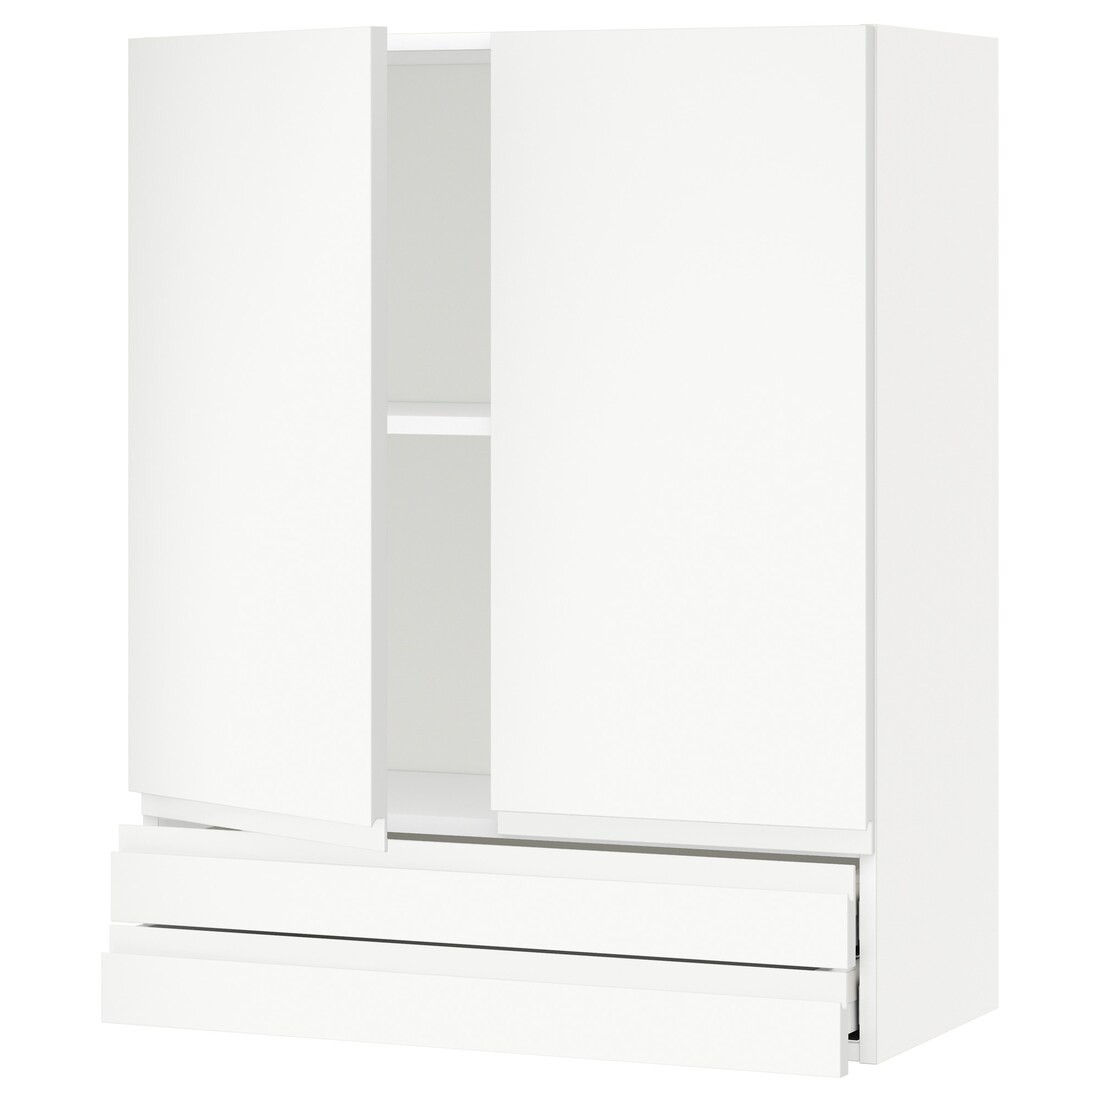 IKEA METOD МЕТОД / MAXIMERA МАКСИМЕРА Навесной шкаф / 2 дверцы / 2 ящика, белый / Voxtorp матовый белый, 80x100 см 69470710 | 694.707.10